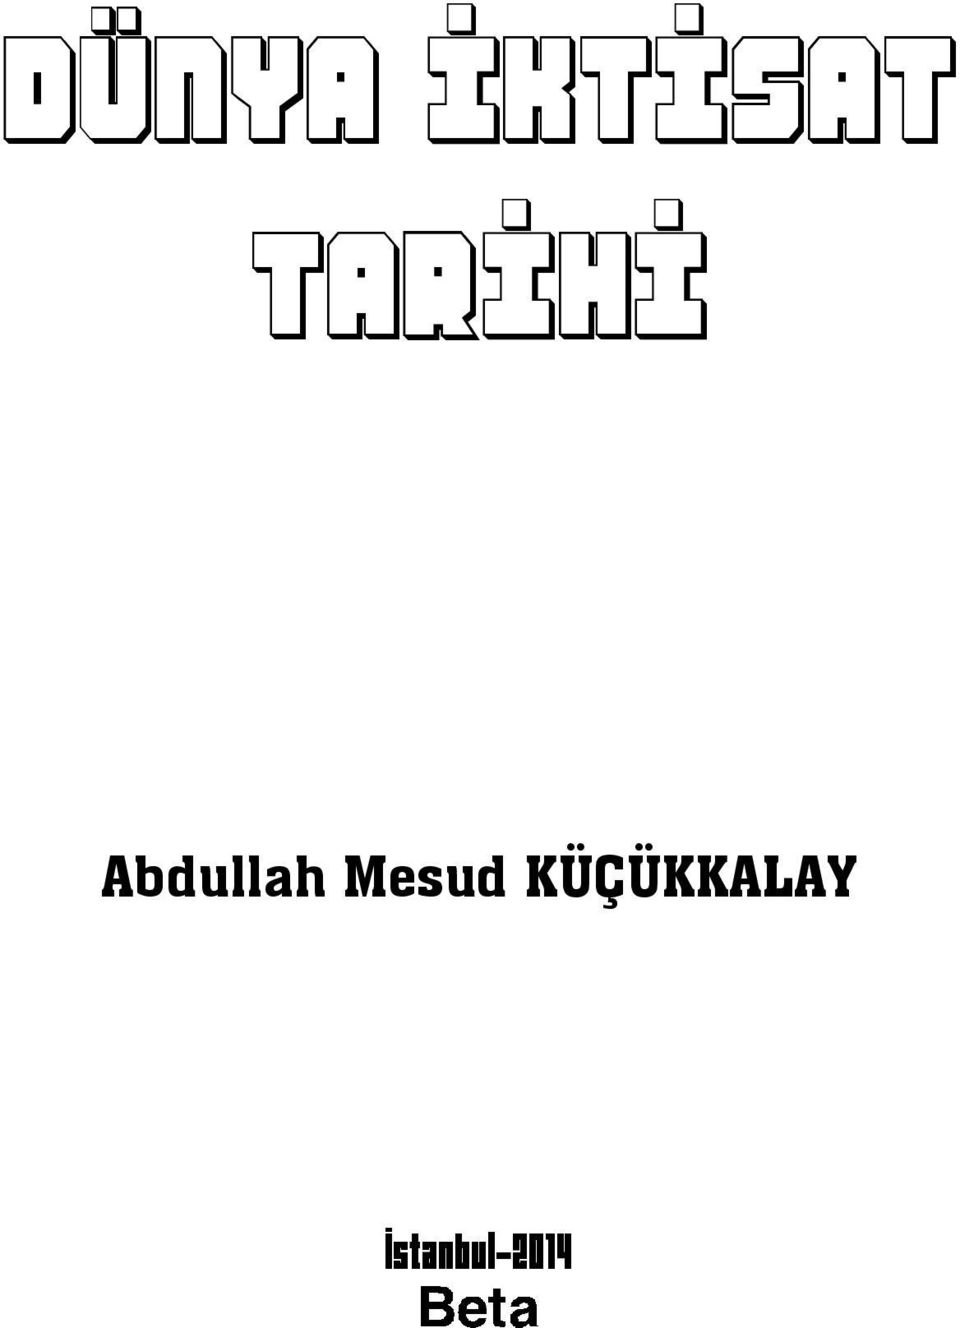 Abdullah Mesud